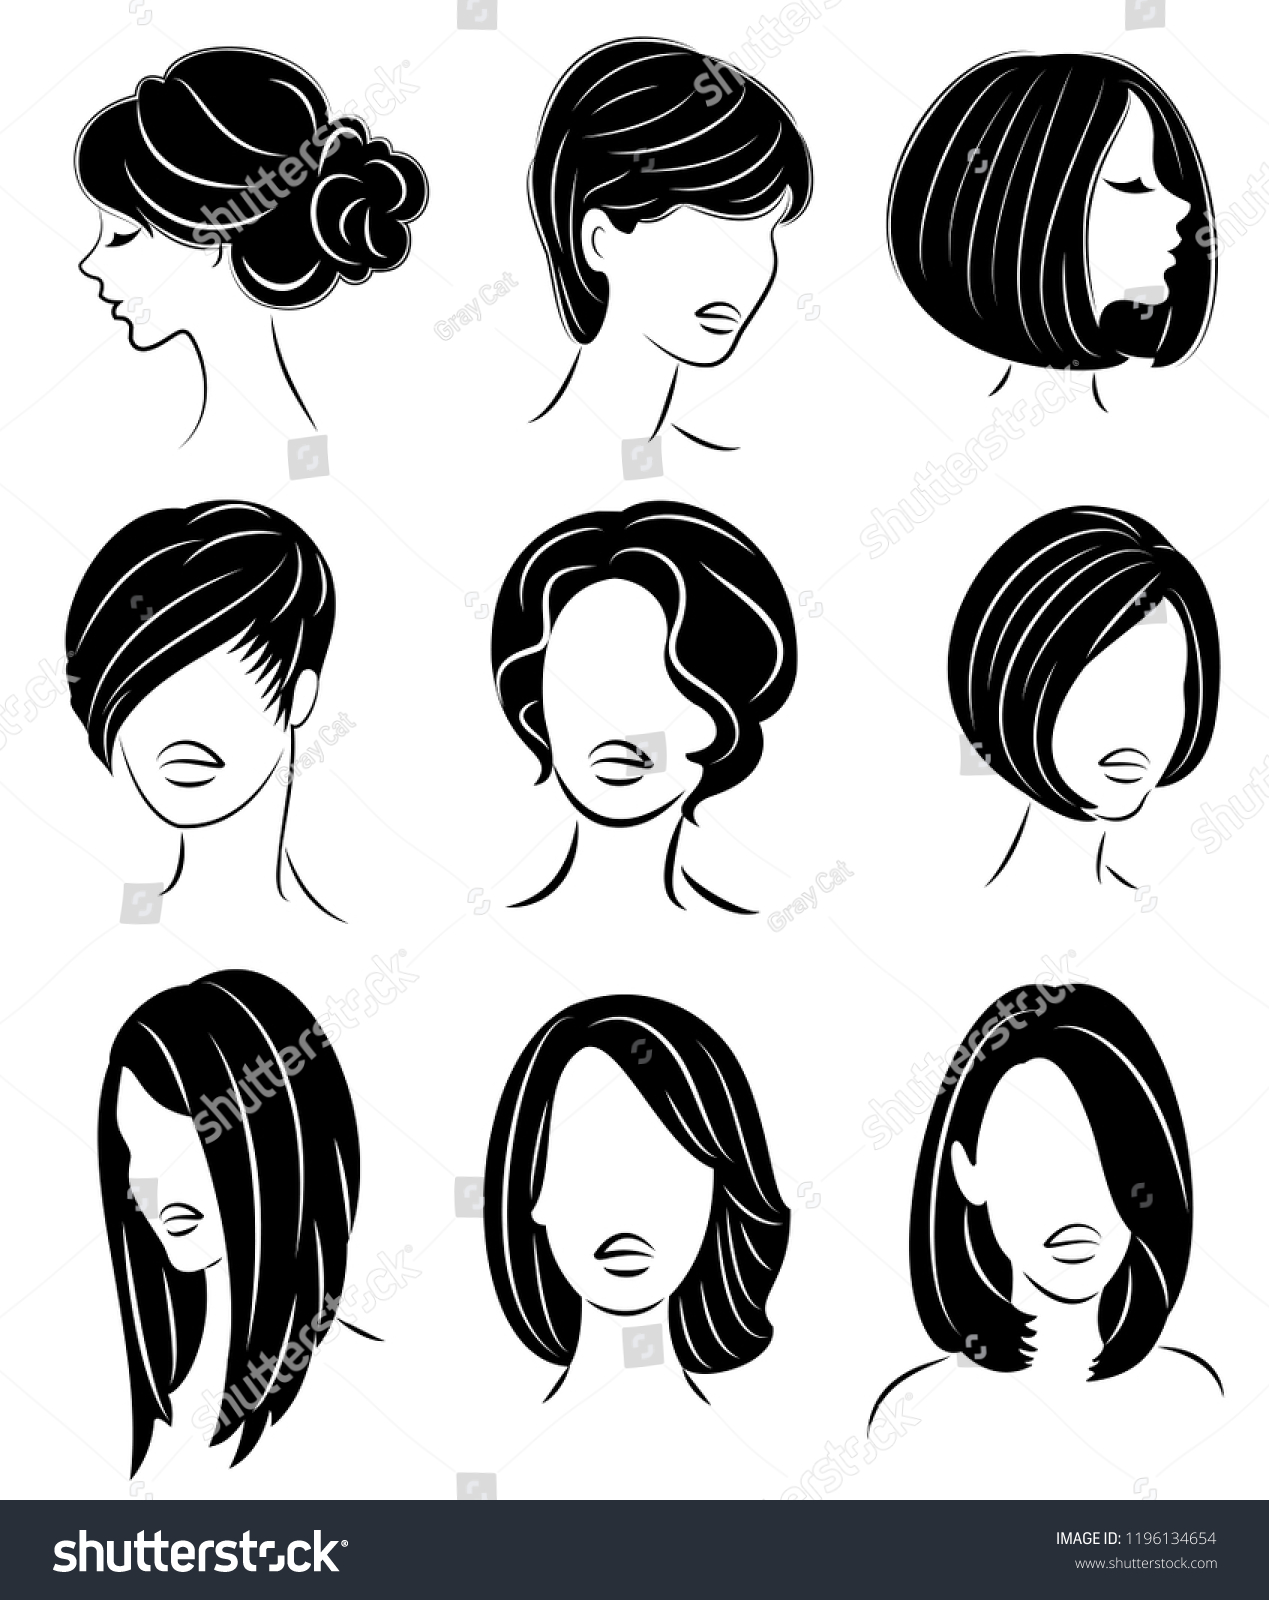 コレクション 美しい女性の頭のシルエット 女の子は 長髪 中髪 短髪の女性の髪型を示す ロゴ 広告に適しています ベクターイラストのセット のベクター画像素材 ロイヤリティフリー